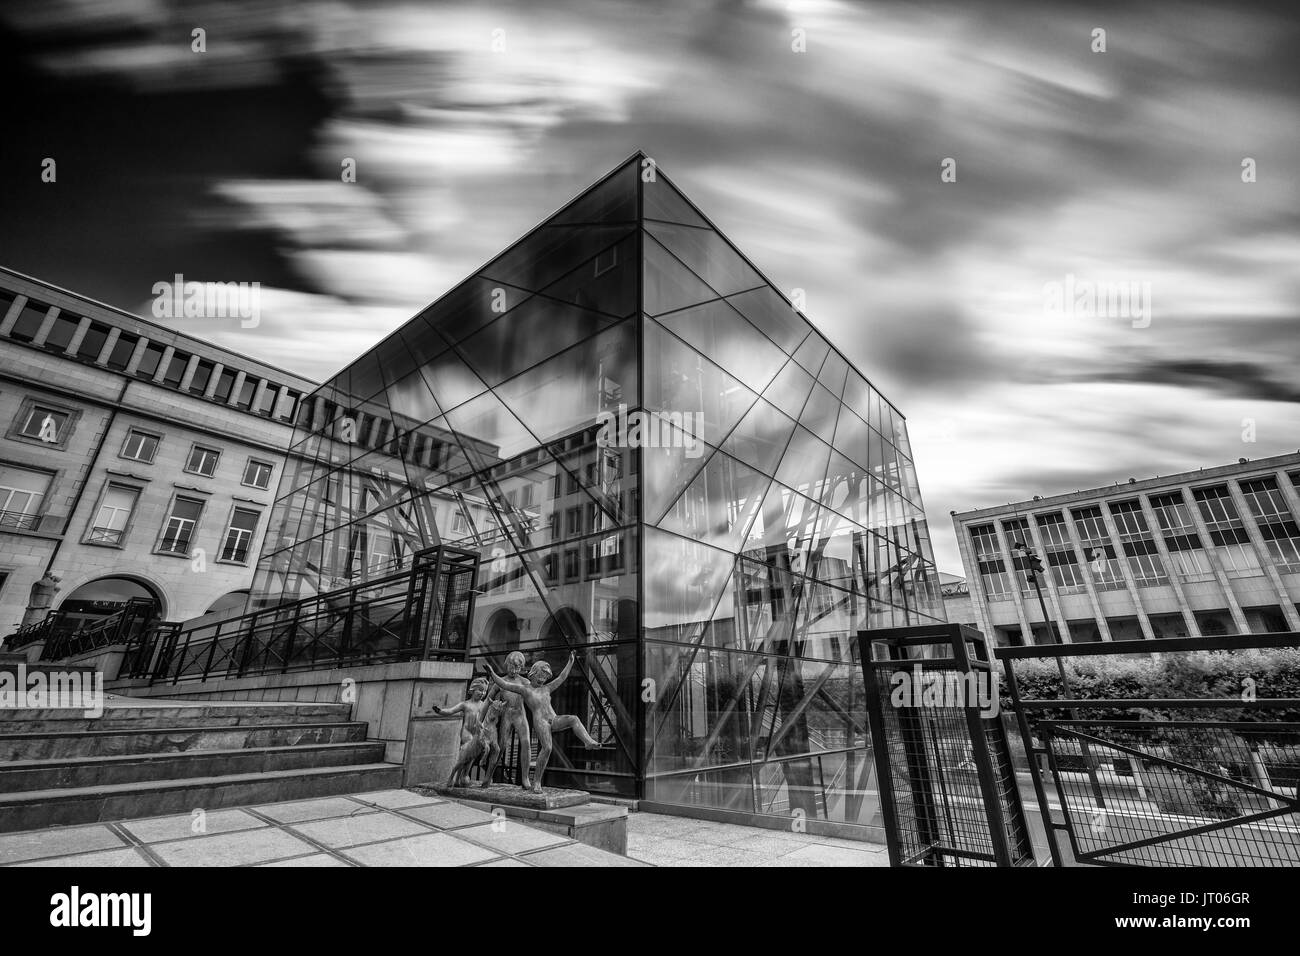 Brüssel - 25. JUNI 2017 - Modernes Gebäude von Square Brussels Meeting Center in der historischen Kunstberg (Mont des Arts) in Brüssel, Belgien Stockfoto